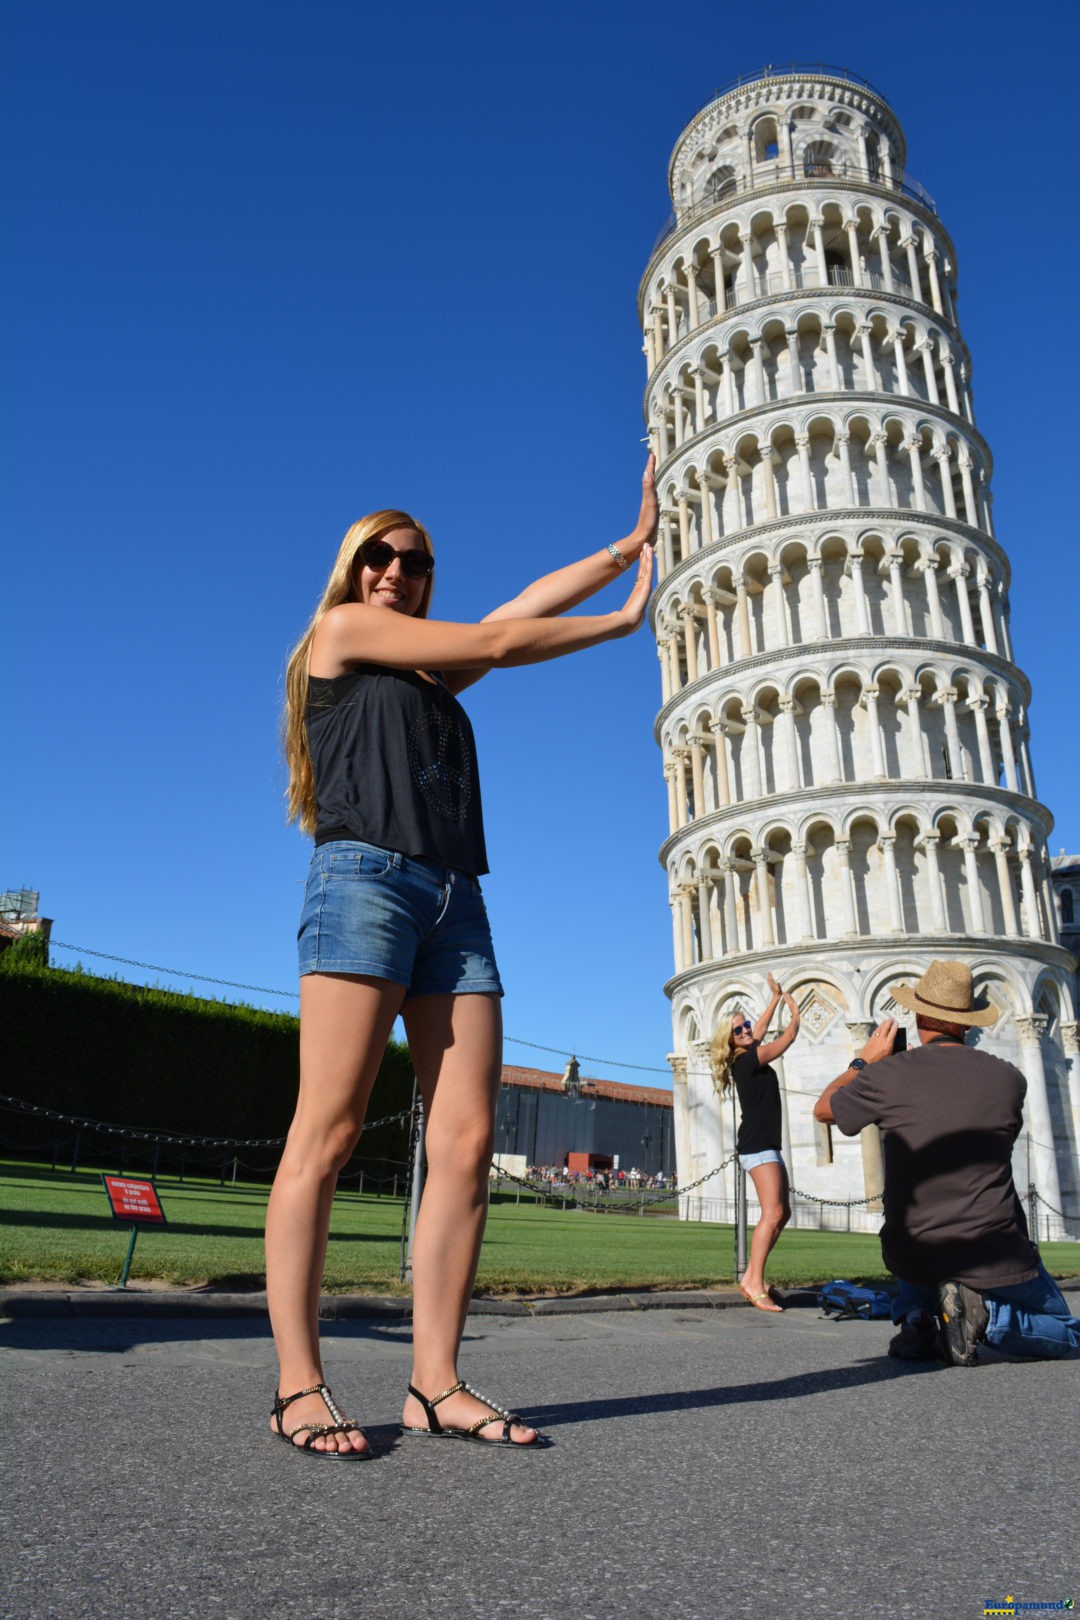 Tradicional foto de Pisa